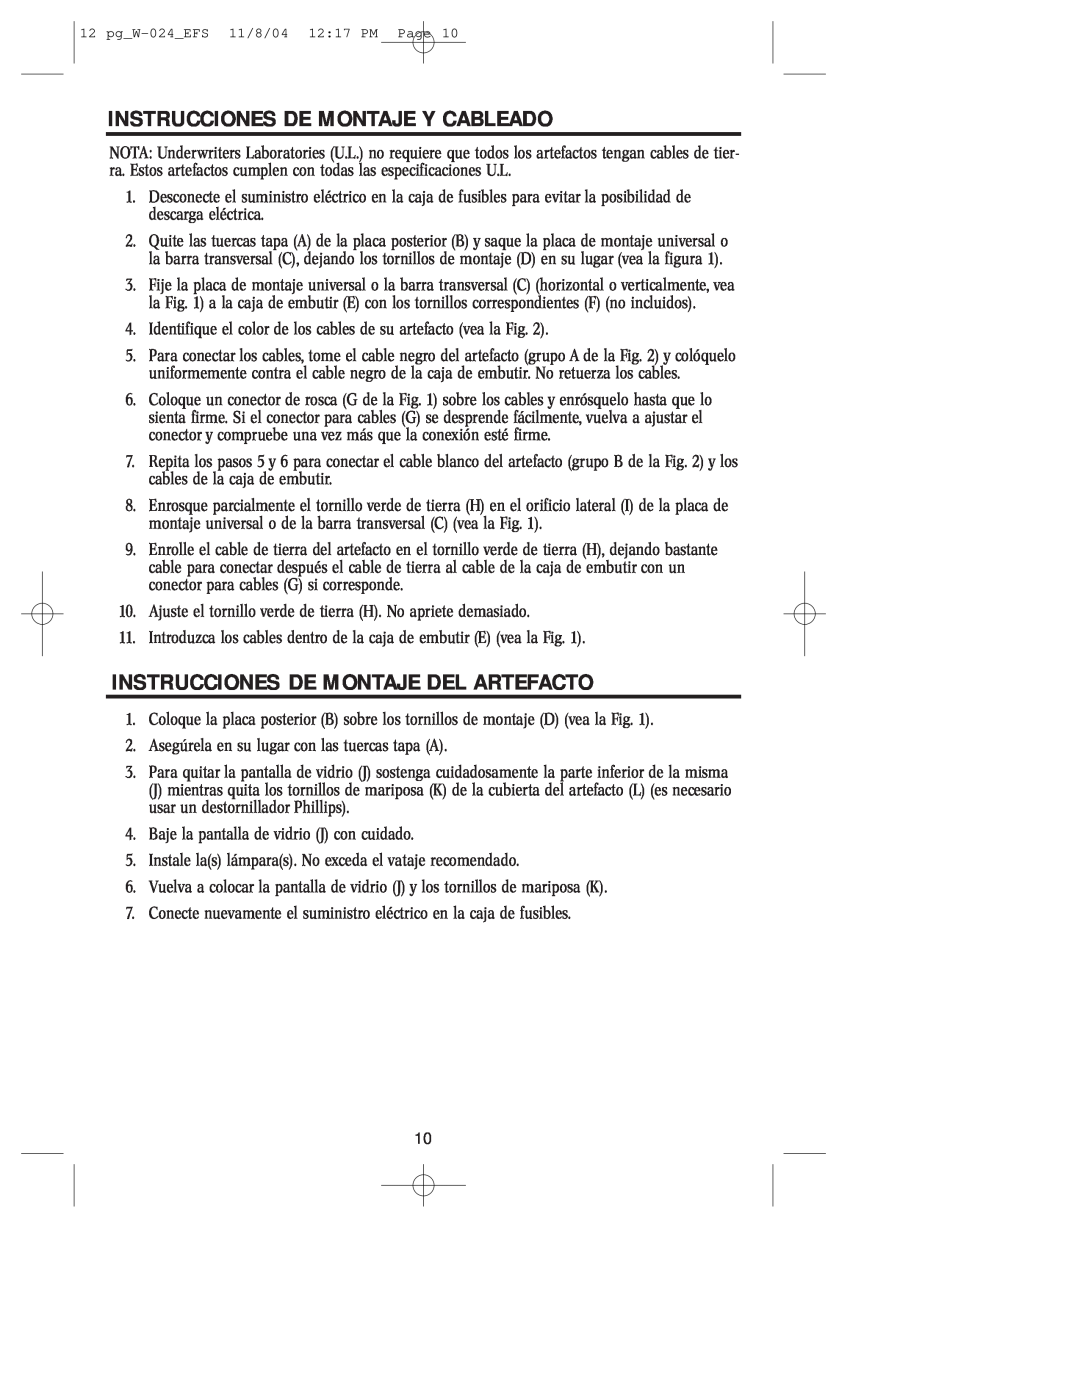 Westinghouse W-024 owner manual Instrucciones De Montaje Y Cableado, Instrucciones De Montaje Del Artefacto 